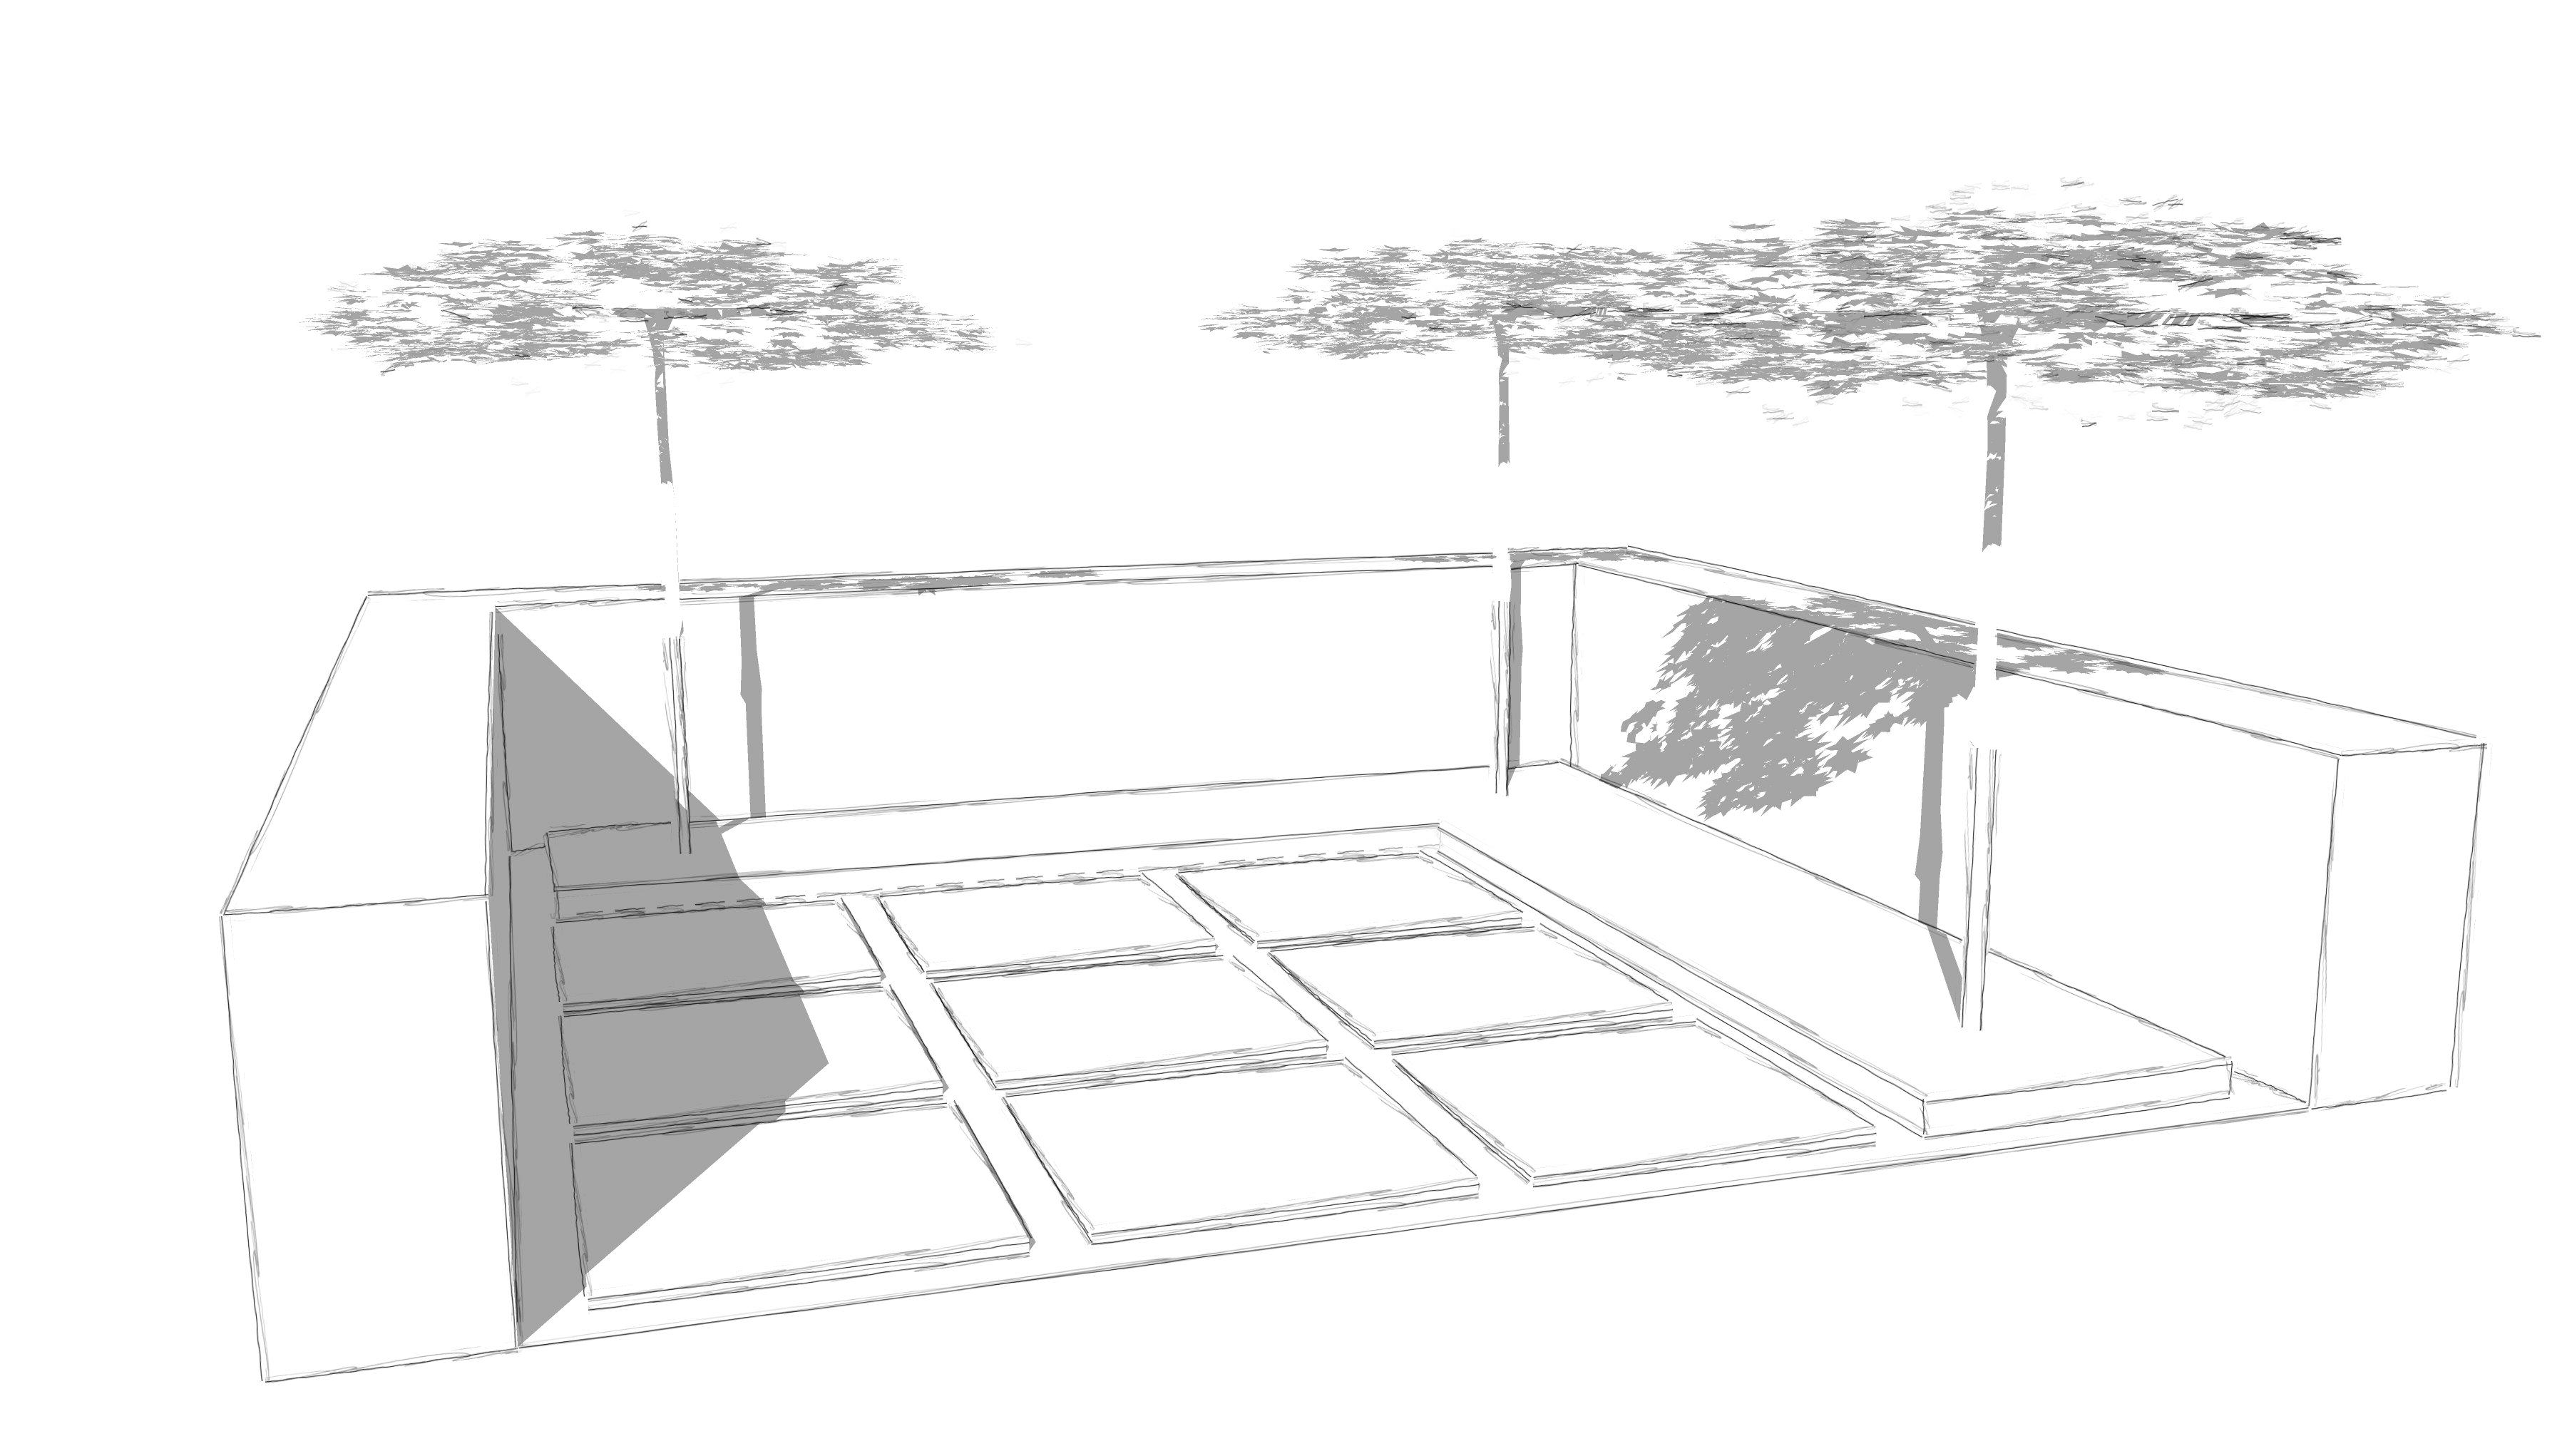 Grüner Patio mit Sitzplatz aus Grossformatplatten, Hochbeet mit Cortenstahleinfassung, Heckeneinfriedung und Dachplatanen als Sonnenschutz